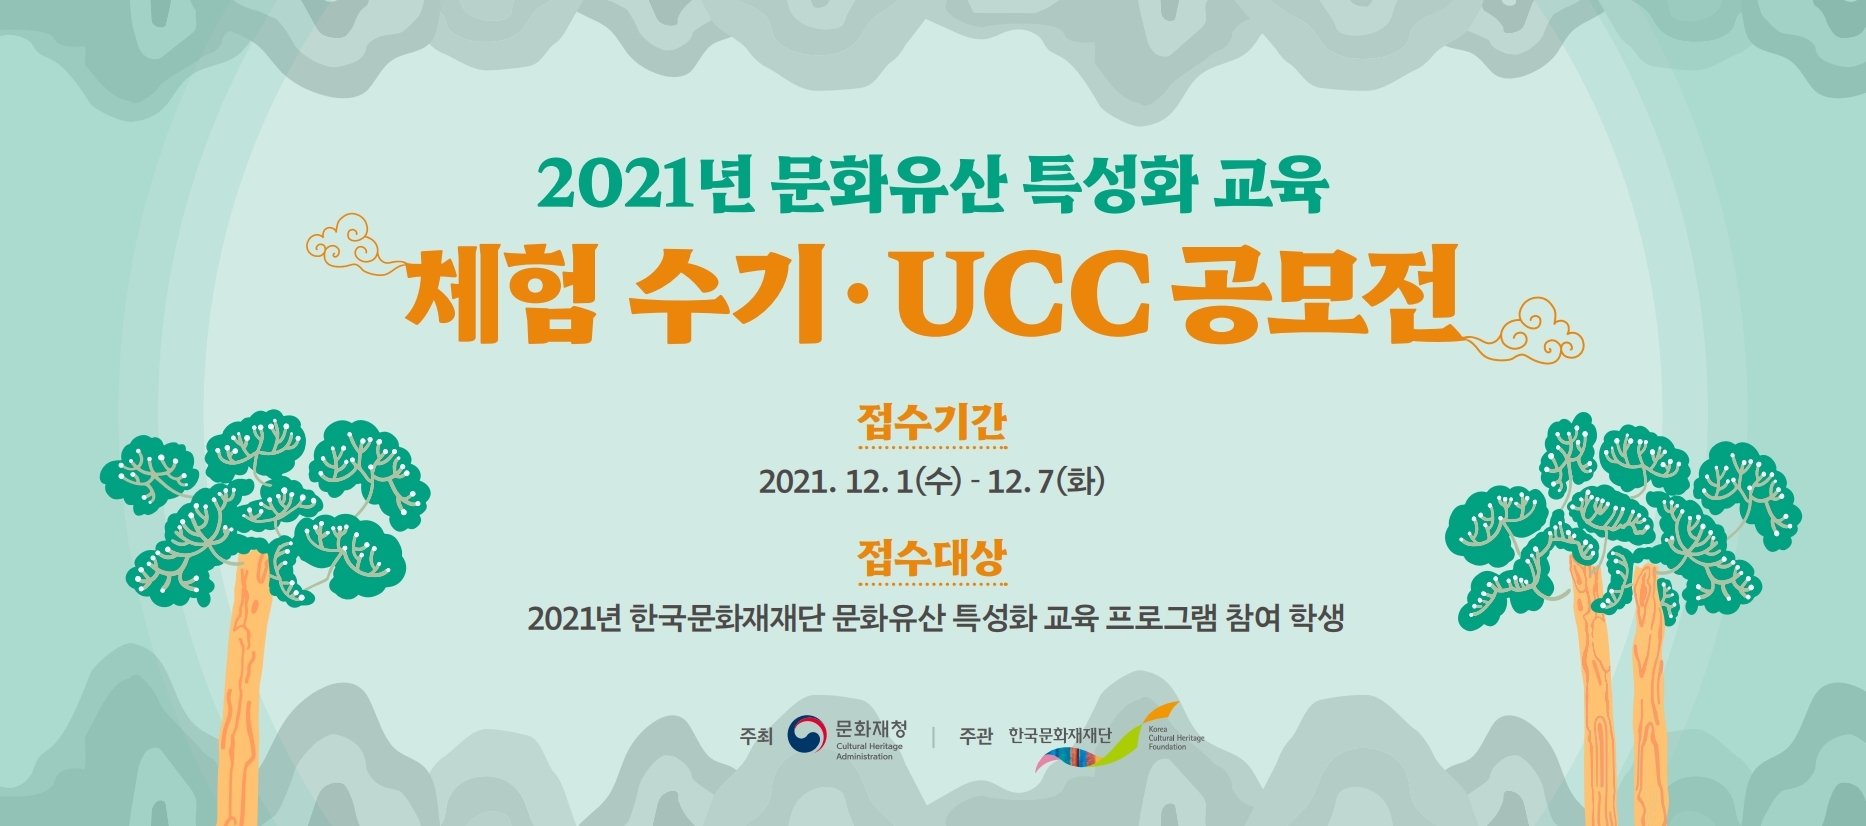 2021년 문화유산 특성화 교육 프로그램 수기·UCC 공모전 포스터